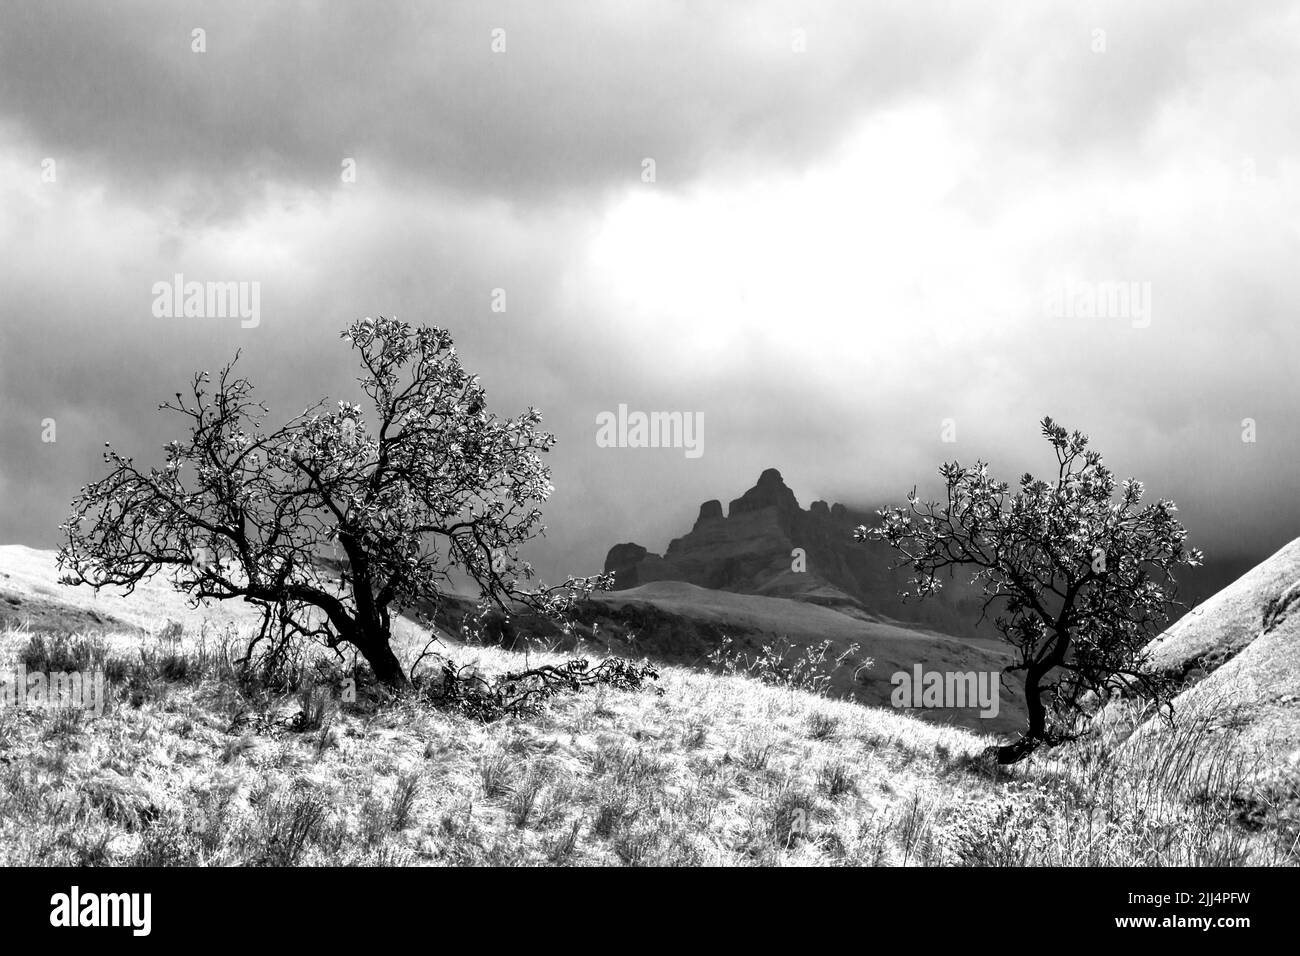 Vista ominosa en blanco y negro de una tormenta que se reúne alrededor de los altos picos de las montañas Drakensberg de Sudáfrica Foto de stock